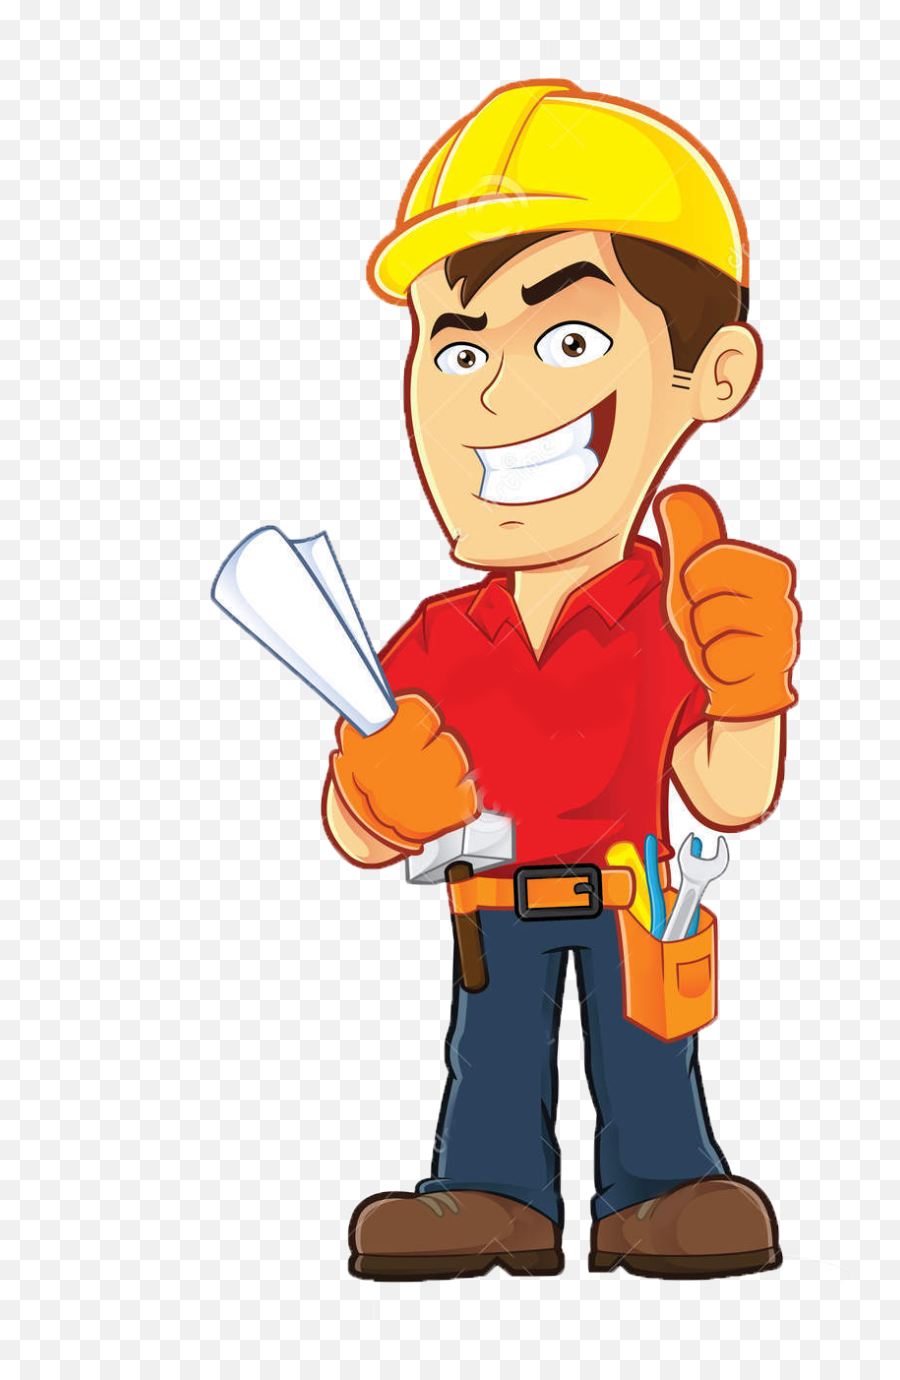 Construction Worker Thumbs Up Cartoon - Thumbs Up Construction Worker Cartoon Emoji,Construction Worker Emoji